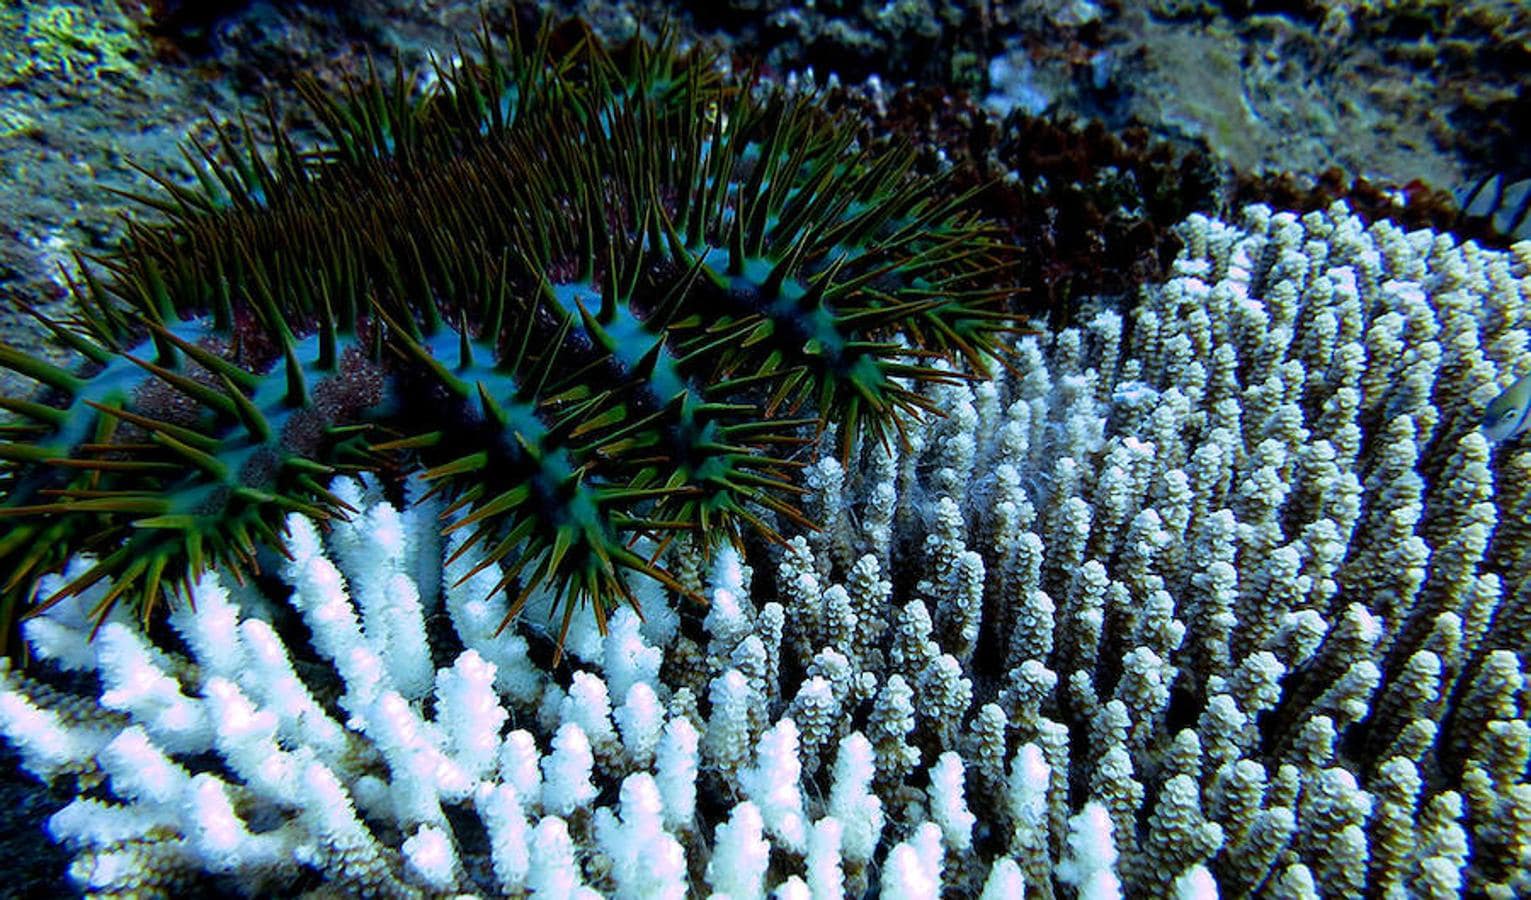 Un viaje por los corales del Pacífico en diez increíbles fotos. Los científicos encontraron muchas estrellas de mar corona de espinas en la isla Alamagan. Estos espinosos invertebrados se alimentan de tejido de coral. Aquí, la estrella de mar deja solo el esqueleto de este coral Acropora a su paso. En gran número, pueden causar daños considerables a los arrecifes de coral, pero en pequeñas cantidades, son un componente clave natural del ecosistema de los arrecifes de coral.